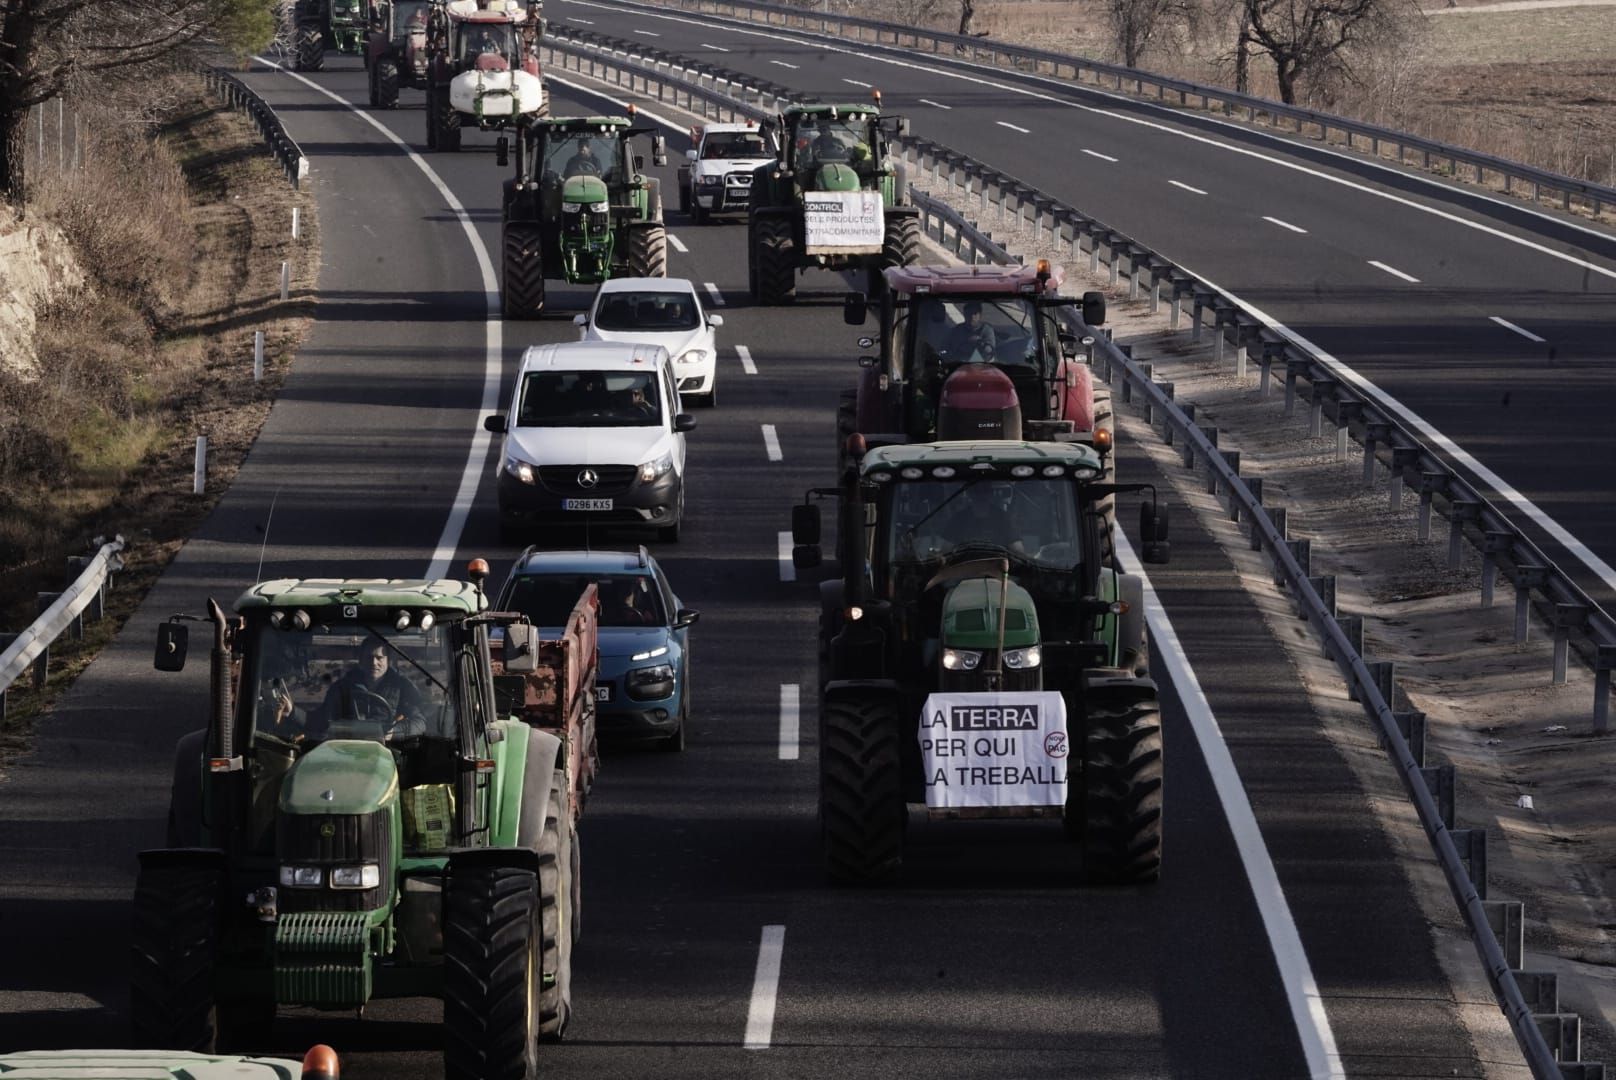 Els pagesos inicien la marxa lenta de tractors cap a Barcelona per la C-16 i reobren la C-25